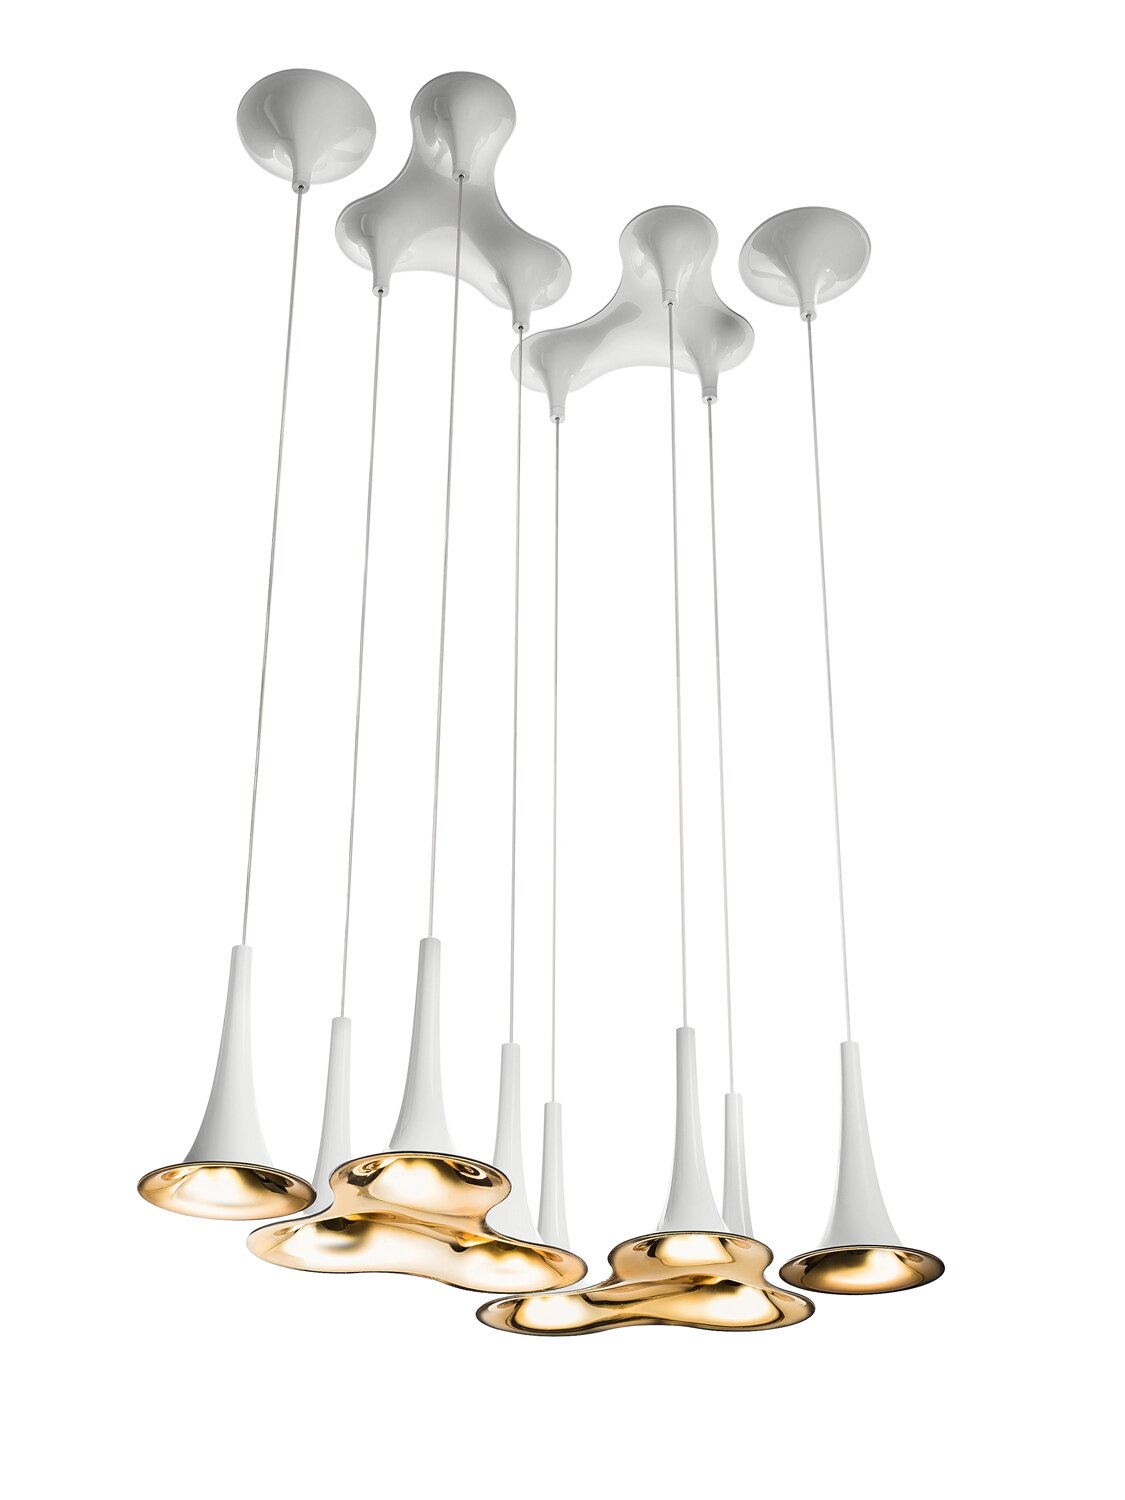 Lampes suspendues en forme de trompette : élevez votre espace